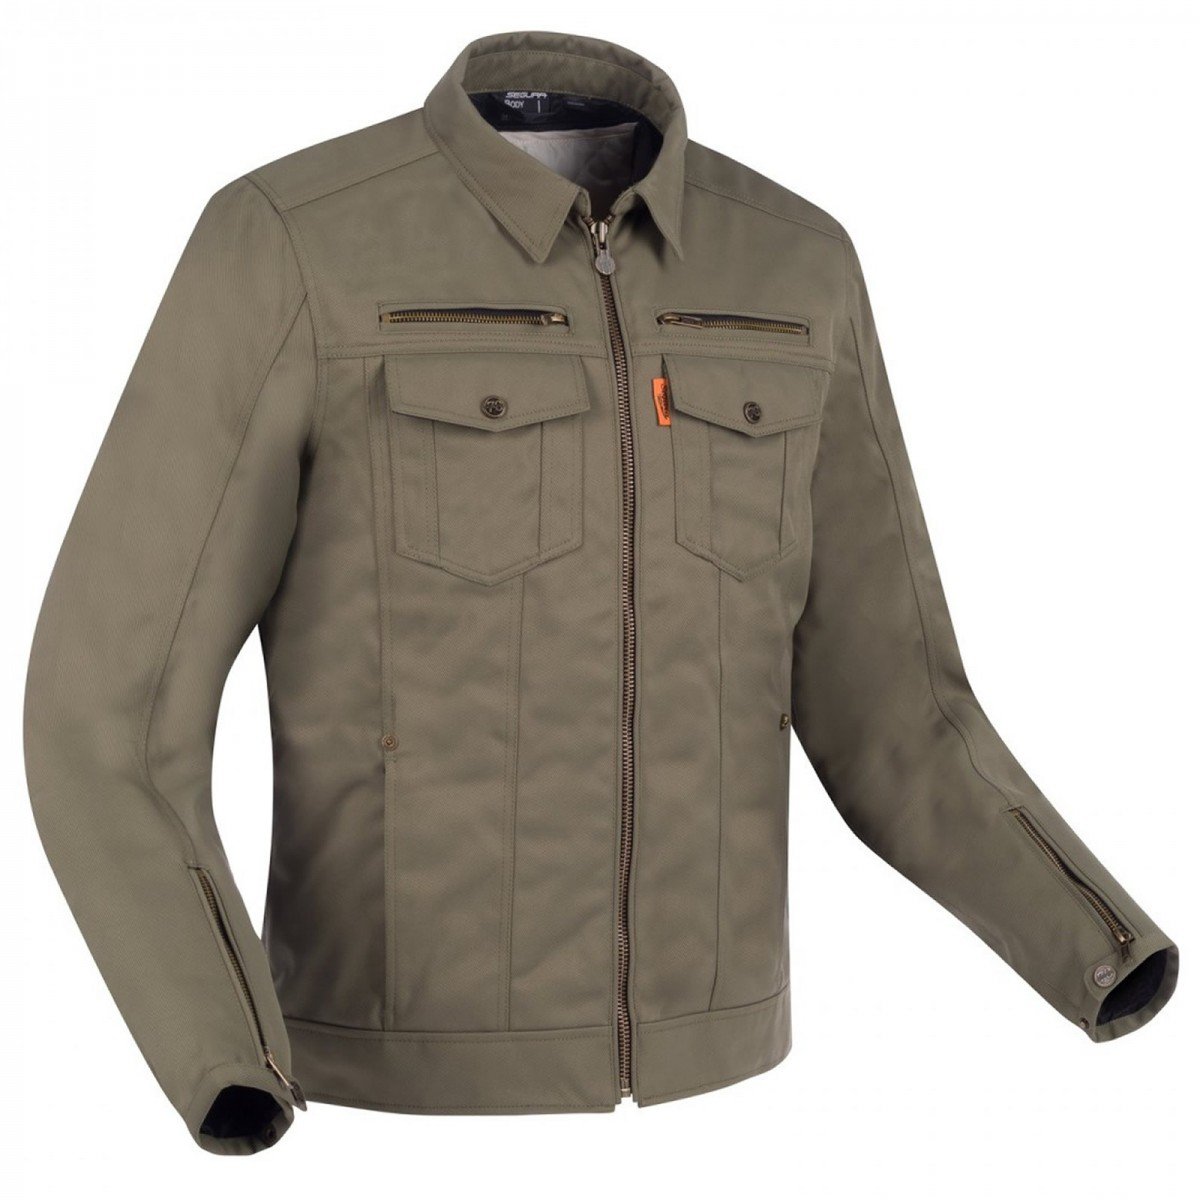 Image of Segura Patrol Jacket Khaki Size M ID 3660815163047